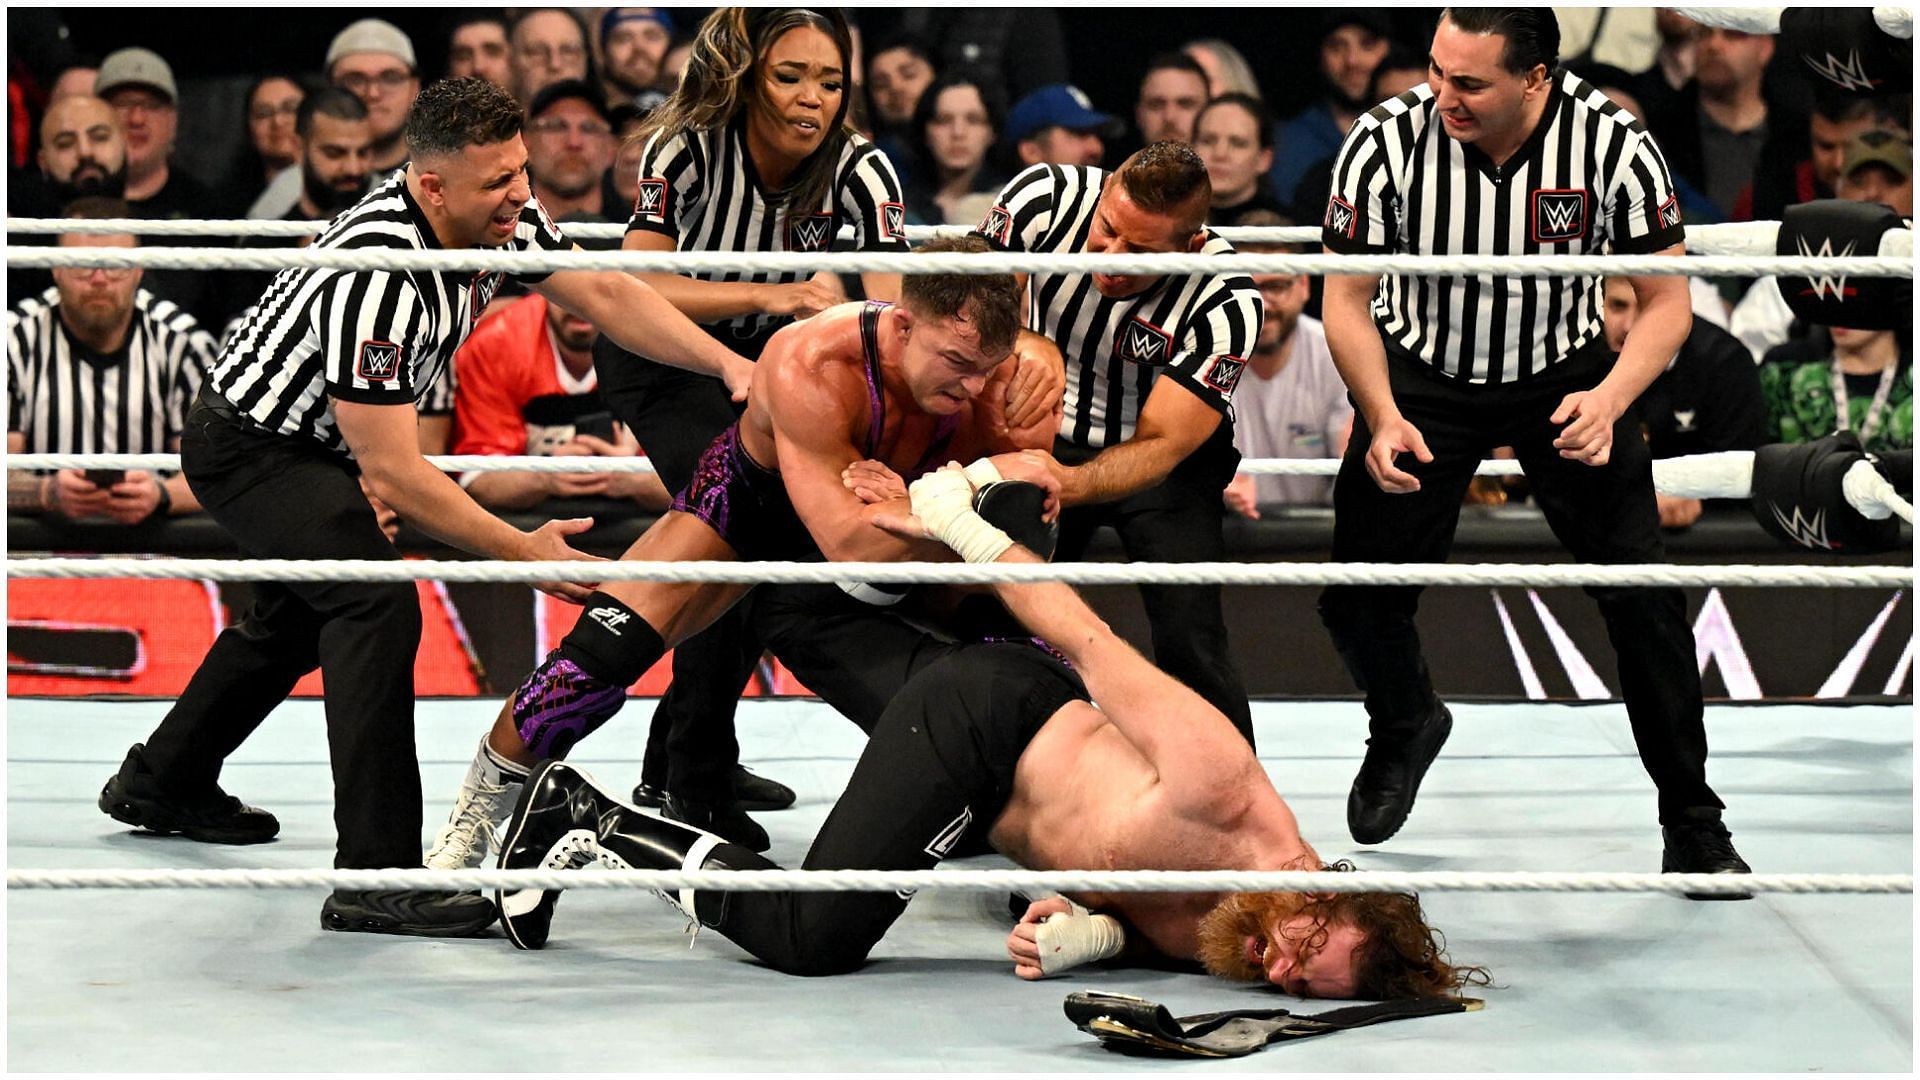 Sami Zayn defeated Chad Gable on WWE RAW.